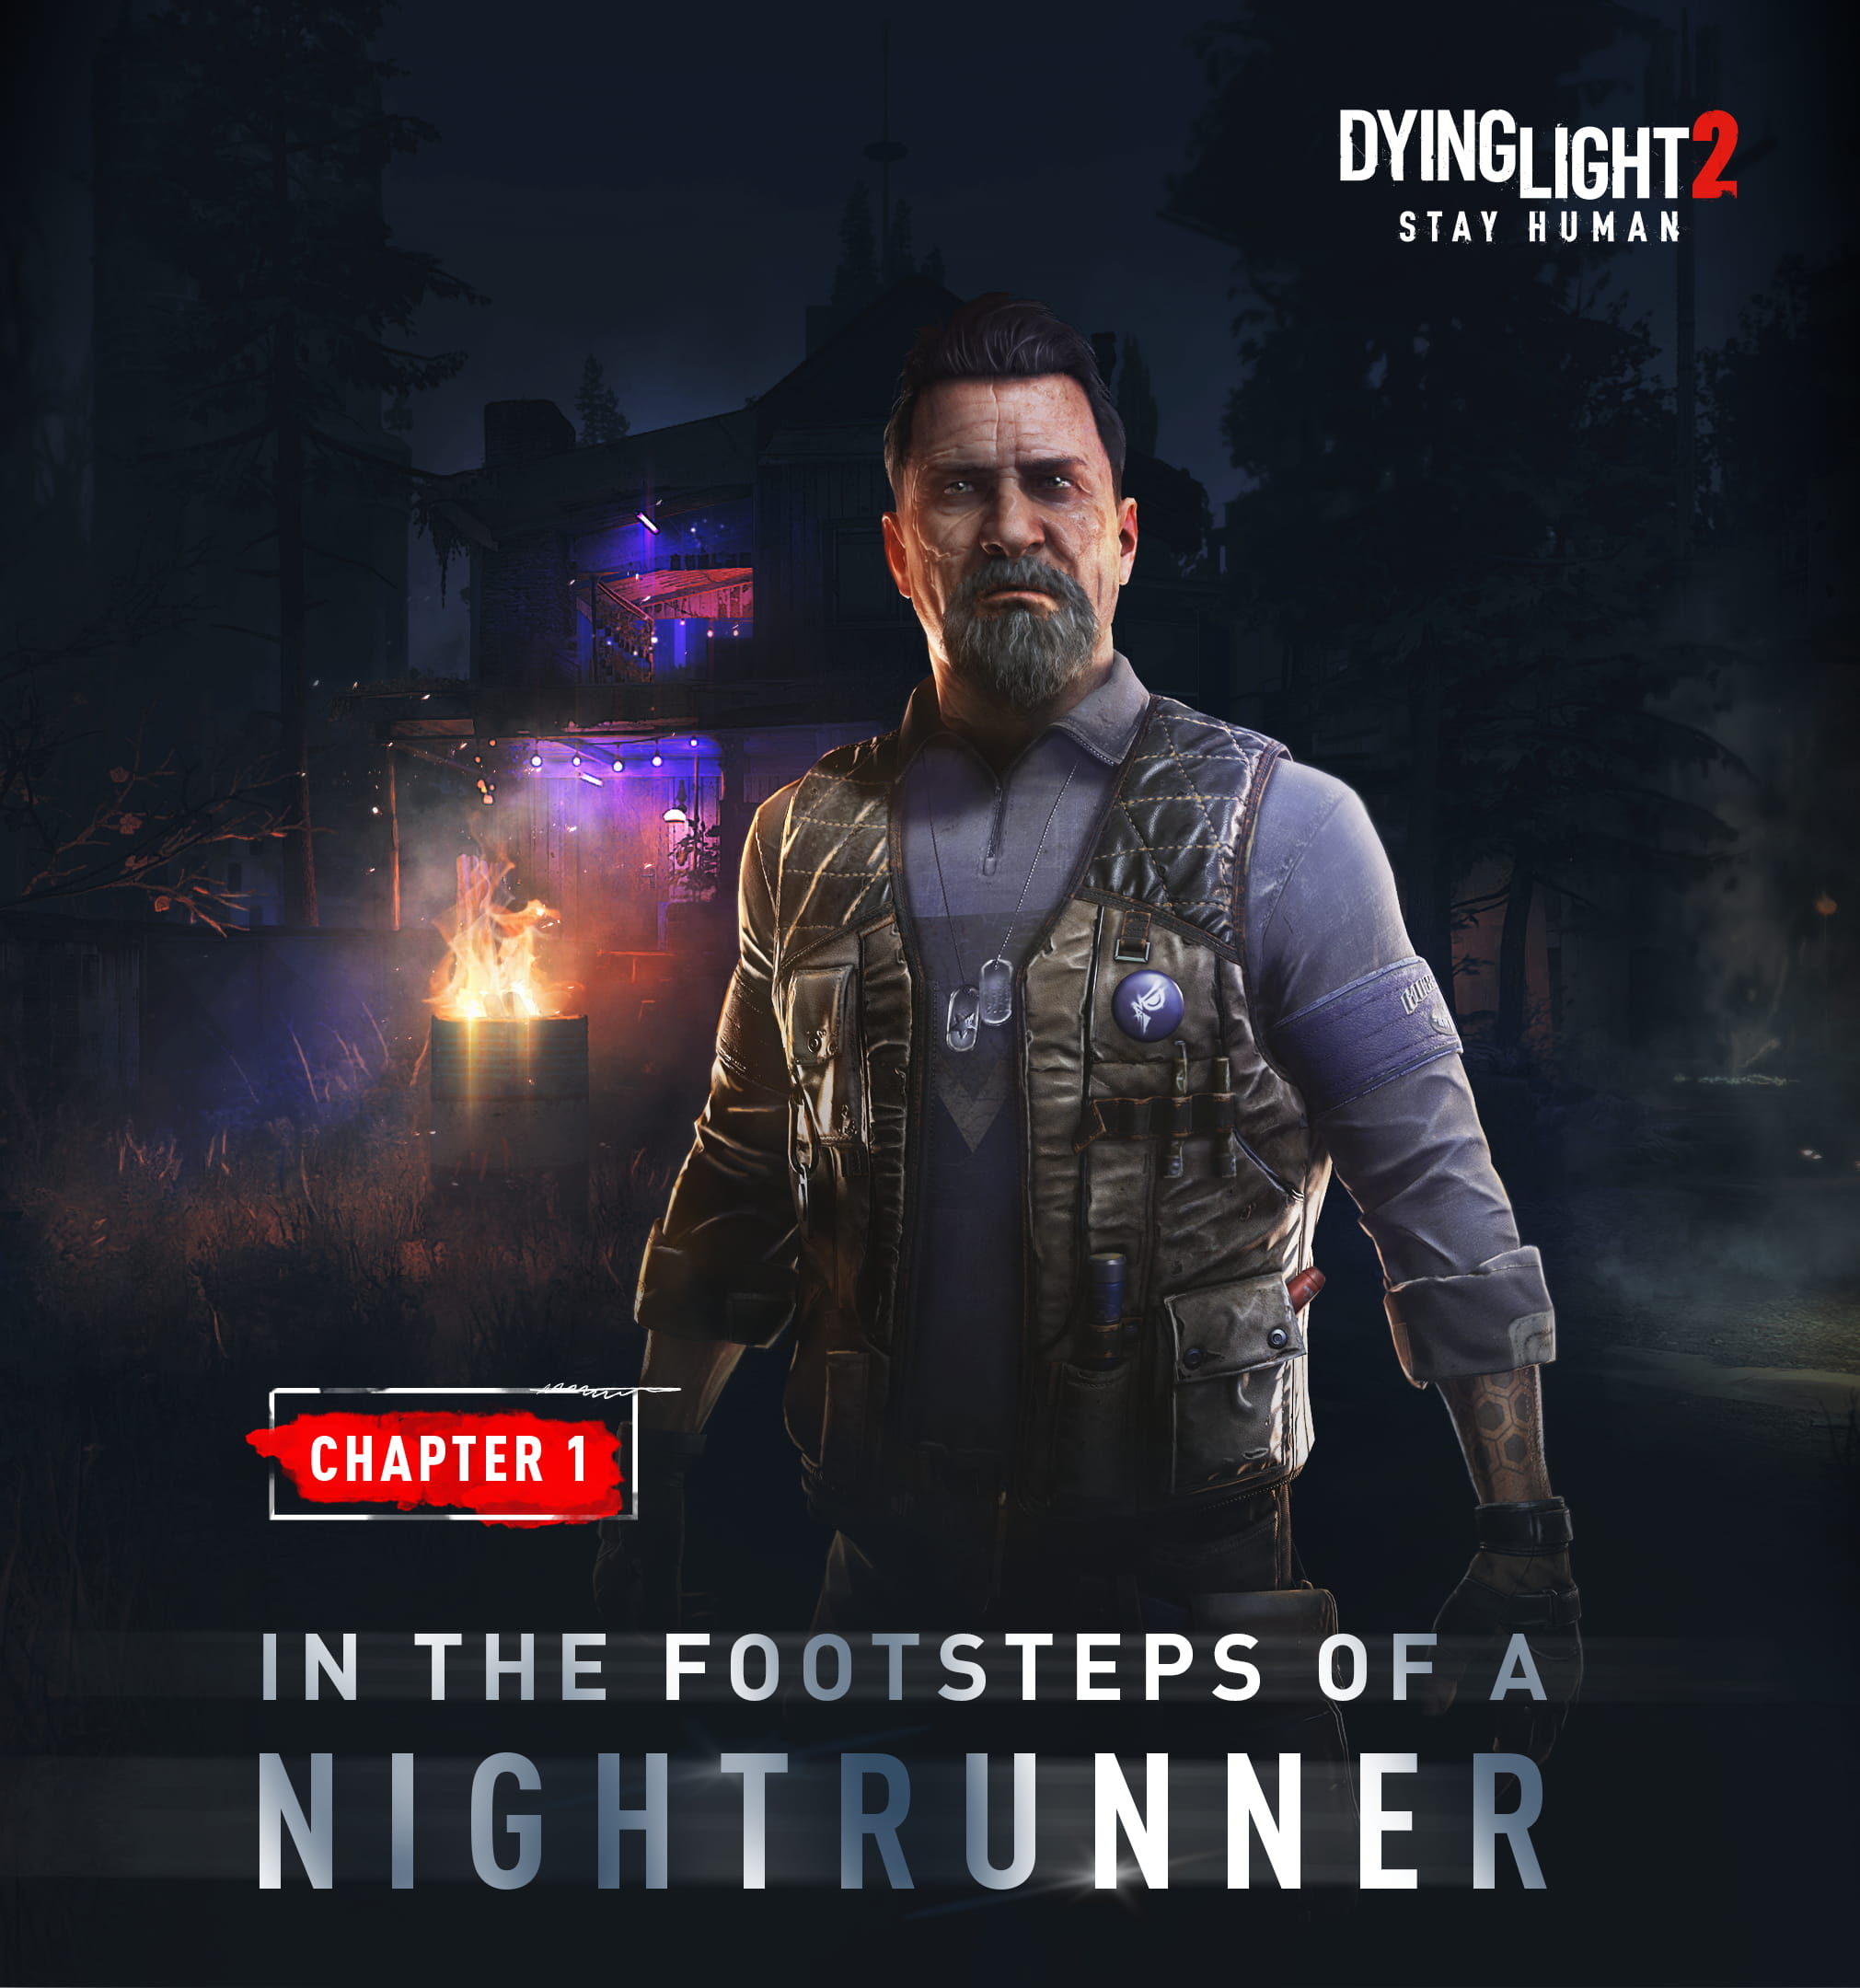 Dying Light 2: Stay Human estrena un nuevo capítulo gratuito Tras los pasos de un Nightrunner